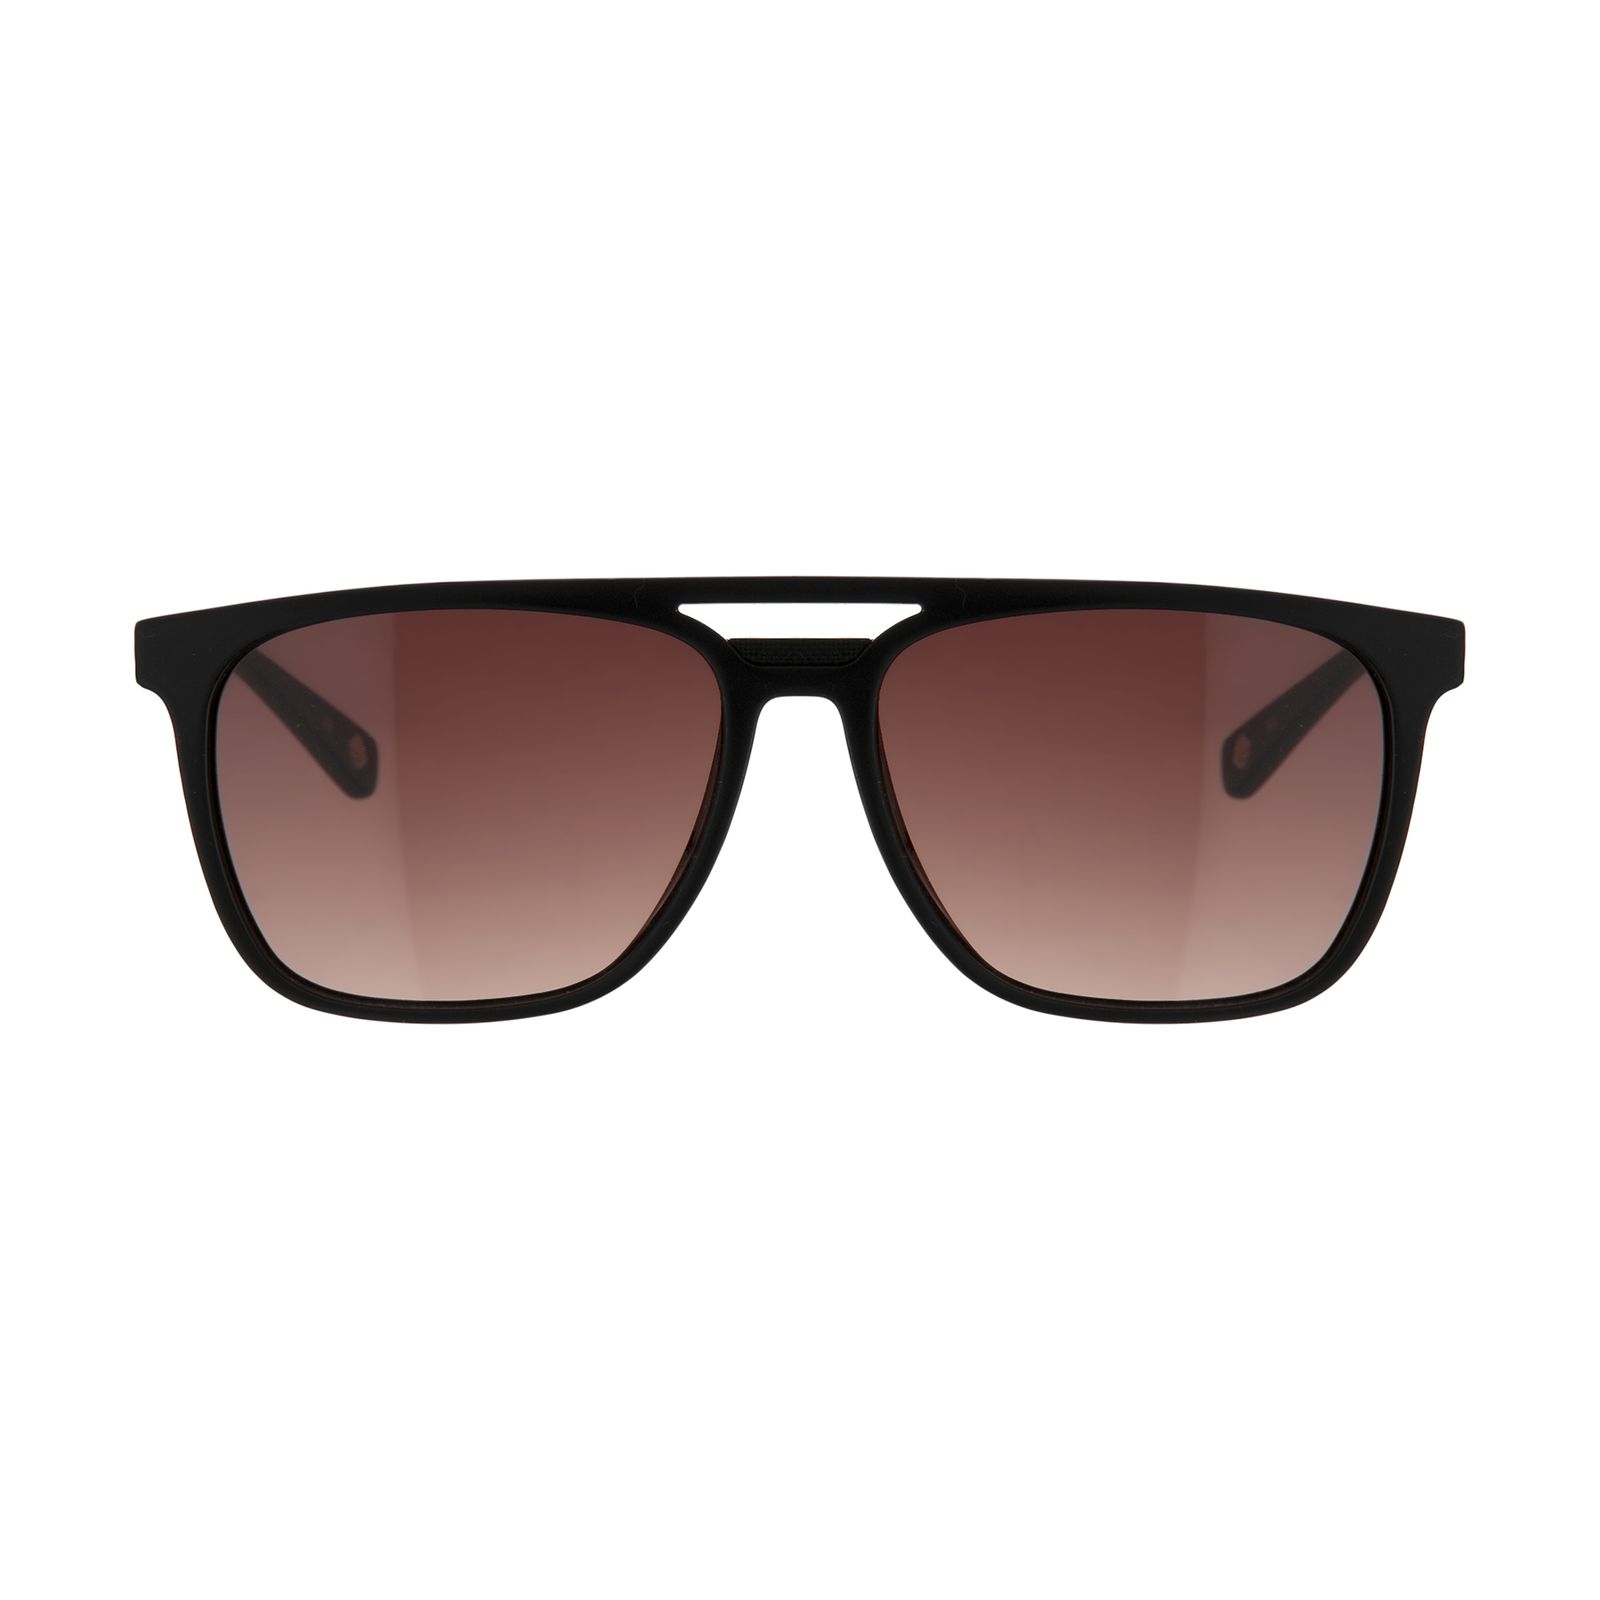 عینک آفتابی تد بیکر مدل TB 1494 OO1 -  - 1